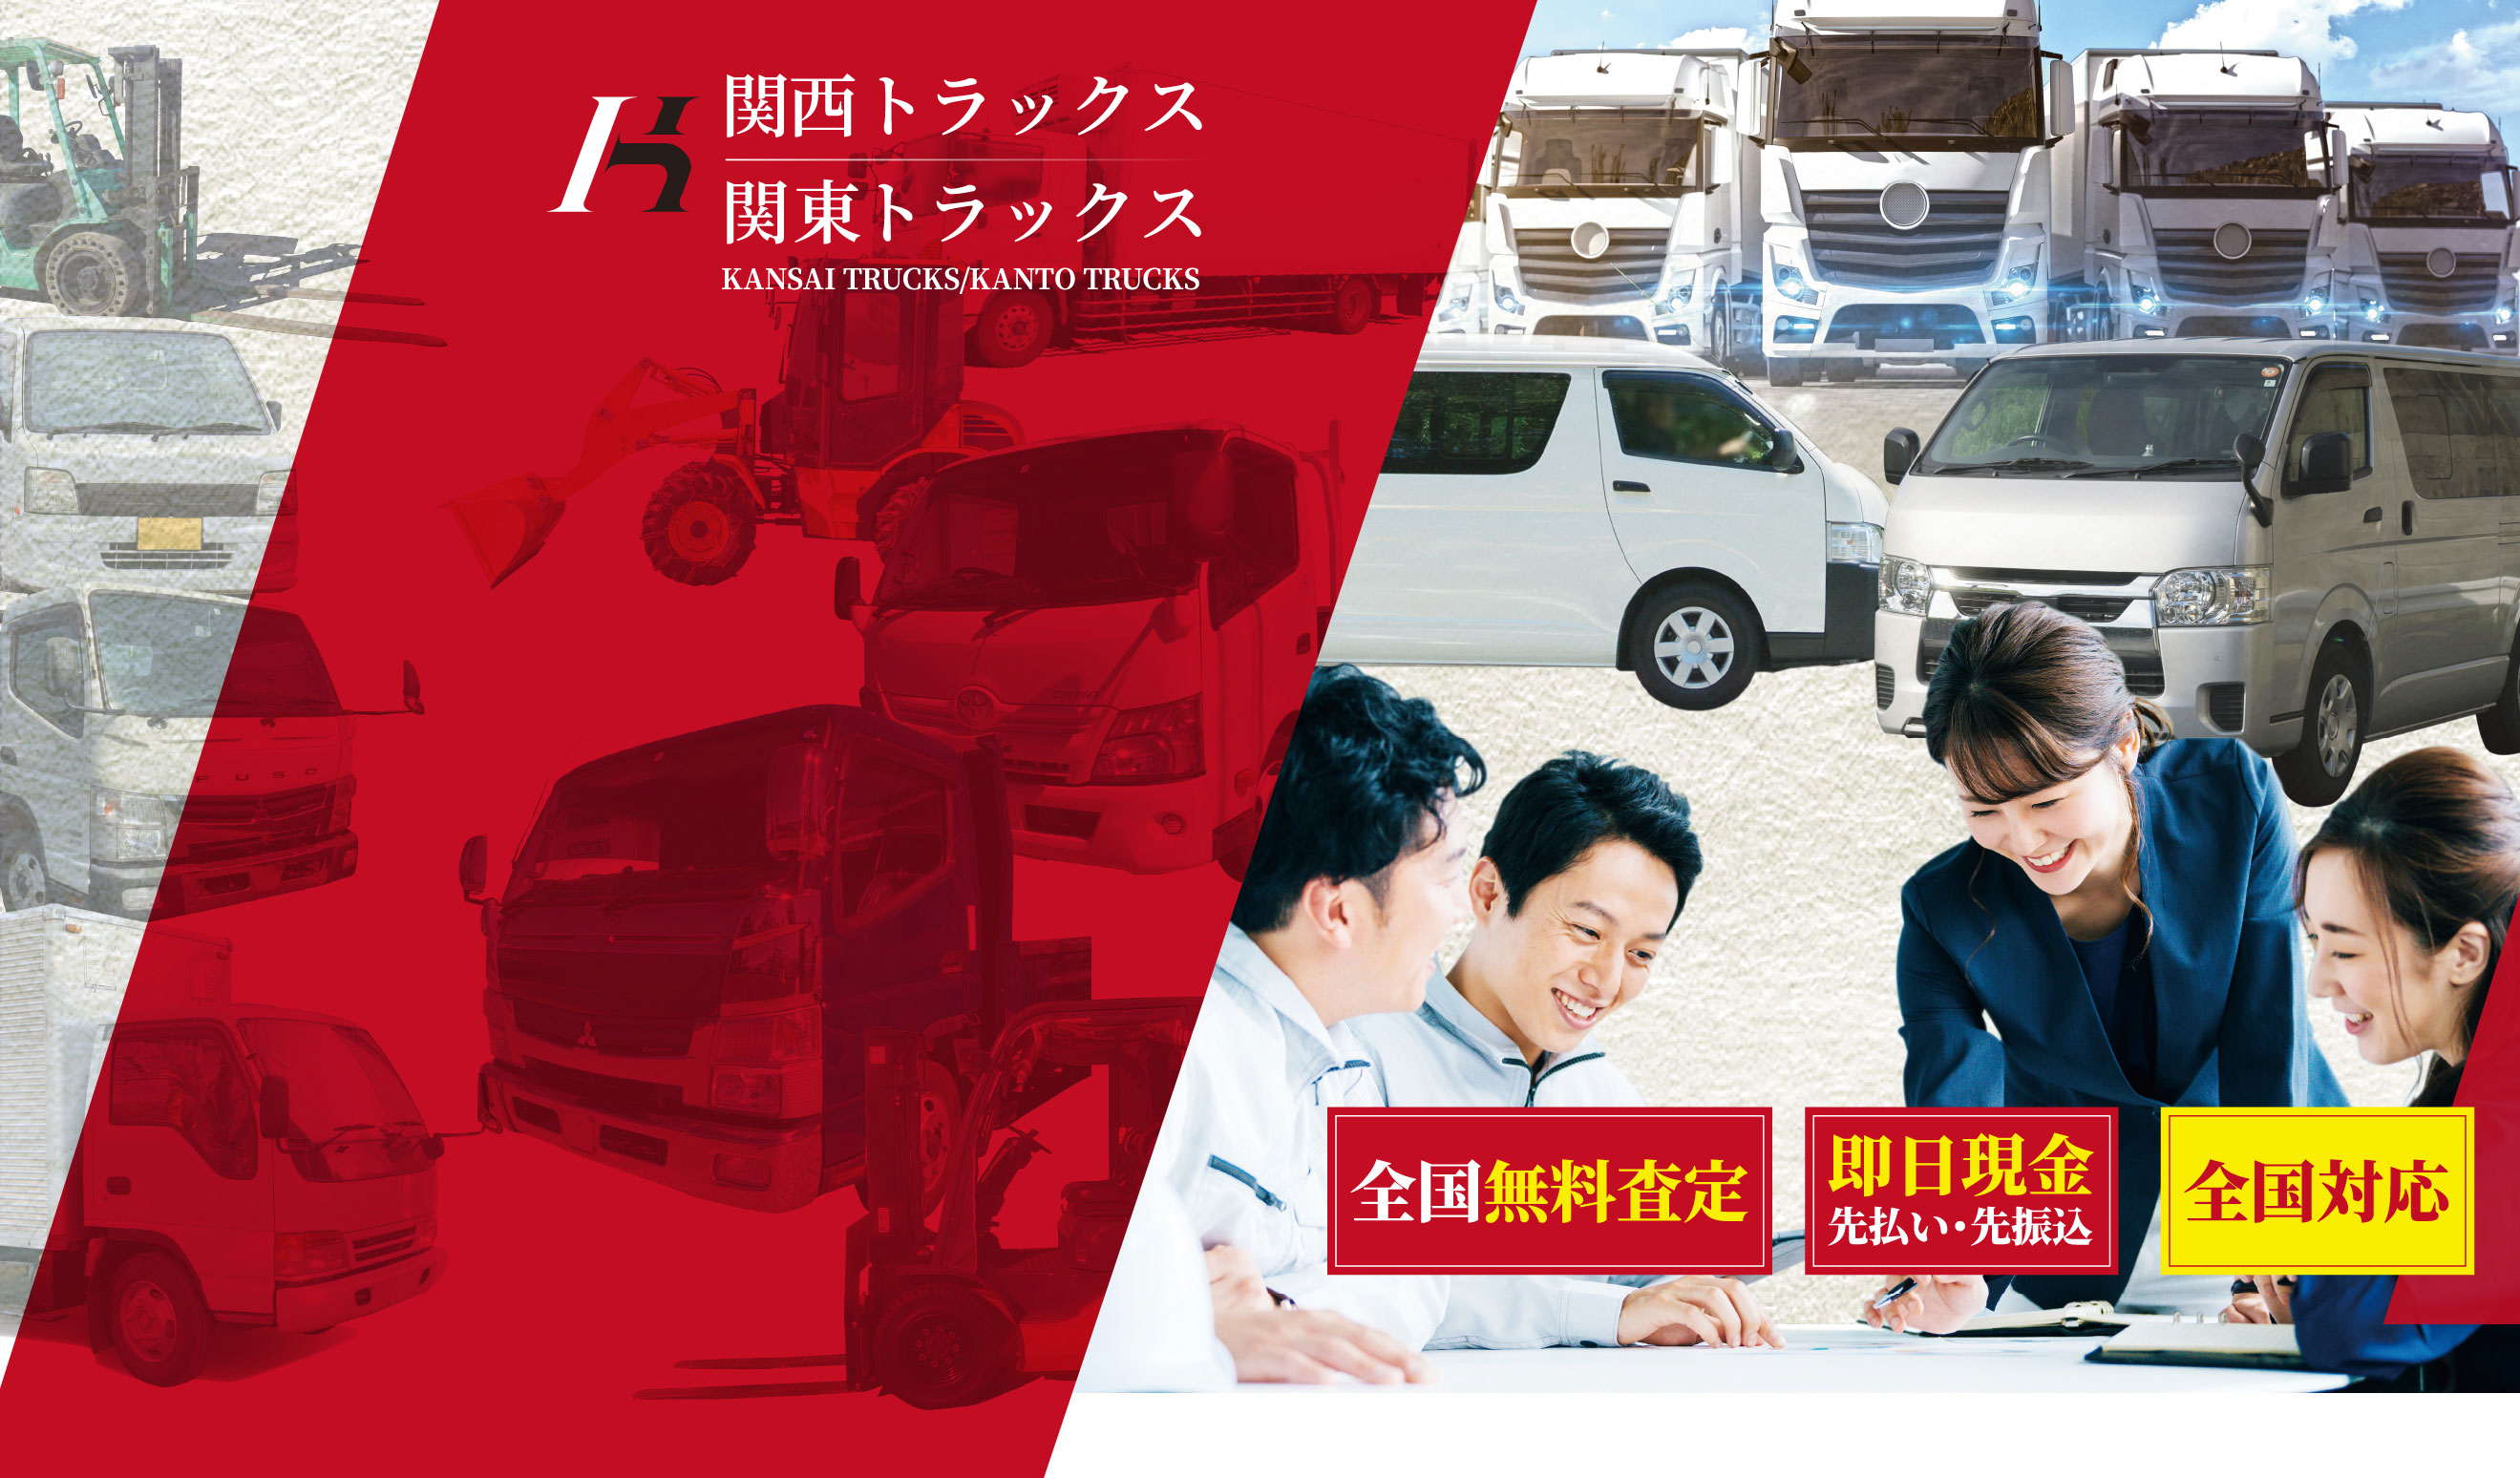 ハイエース・トラック高価買取 関西トラックス 関東トラックス